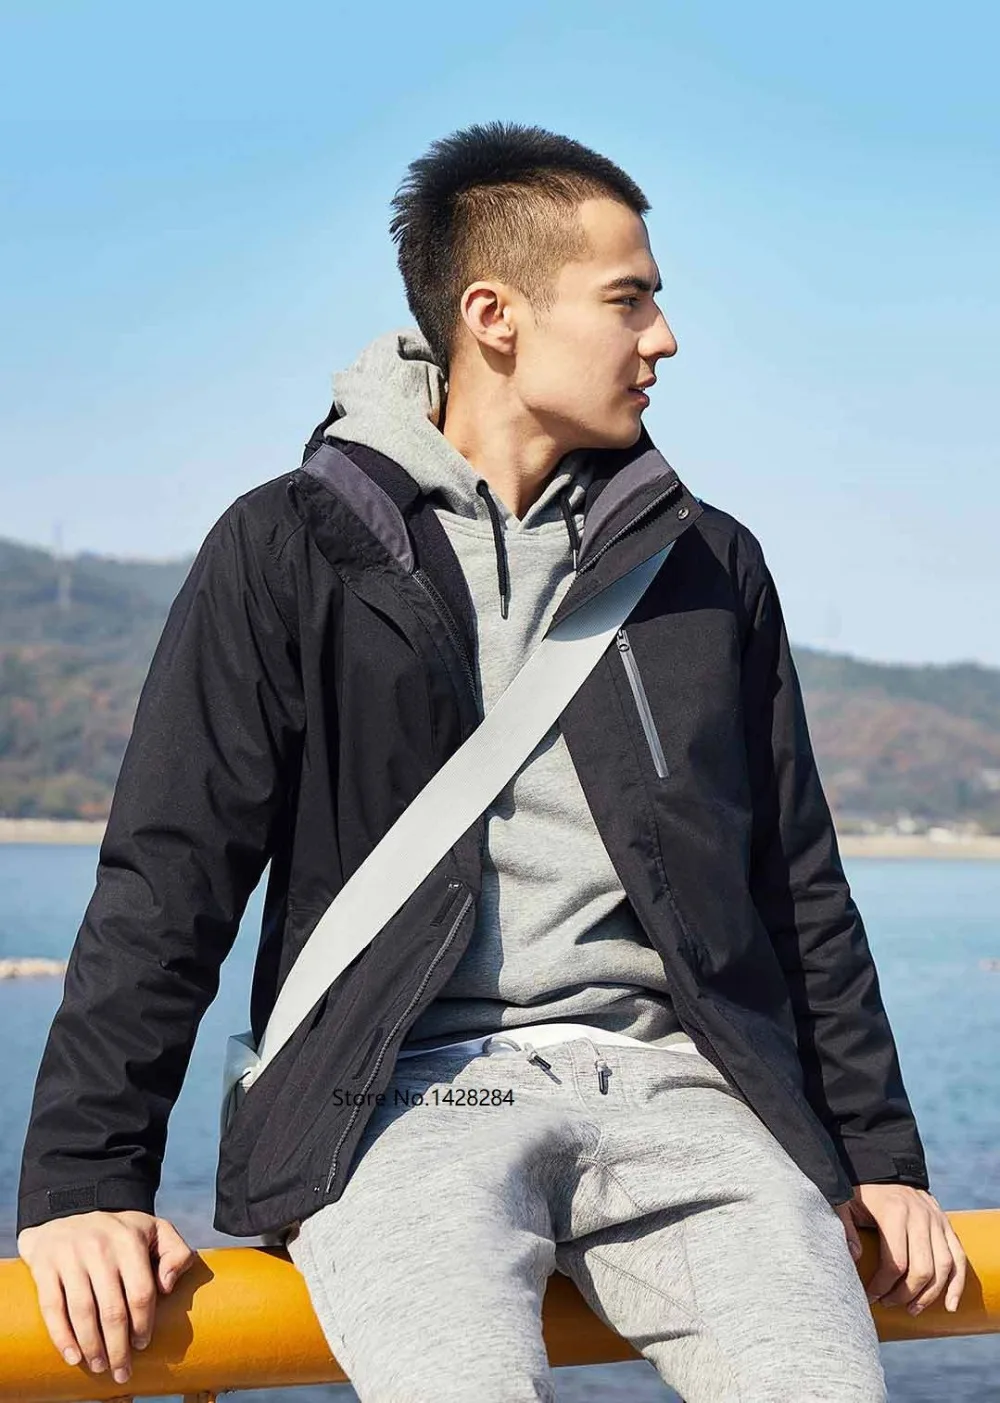 Xiaomi ULEEMARK мужская куртка три в одном водонепроницаемая ветрозащитная износостойкая зимняя модная уличная теплая спортивная куртка для альпинизма